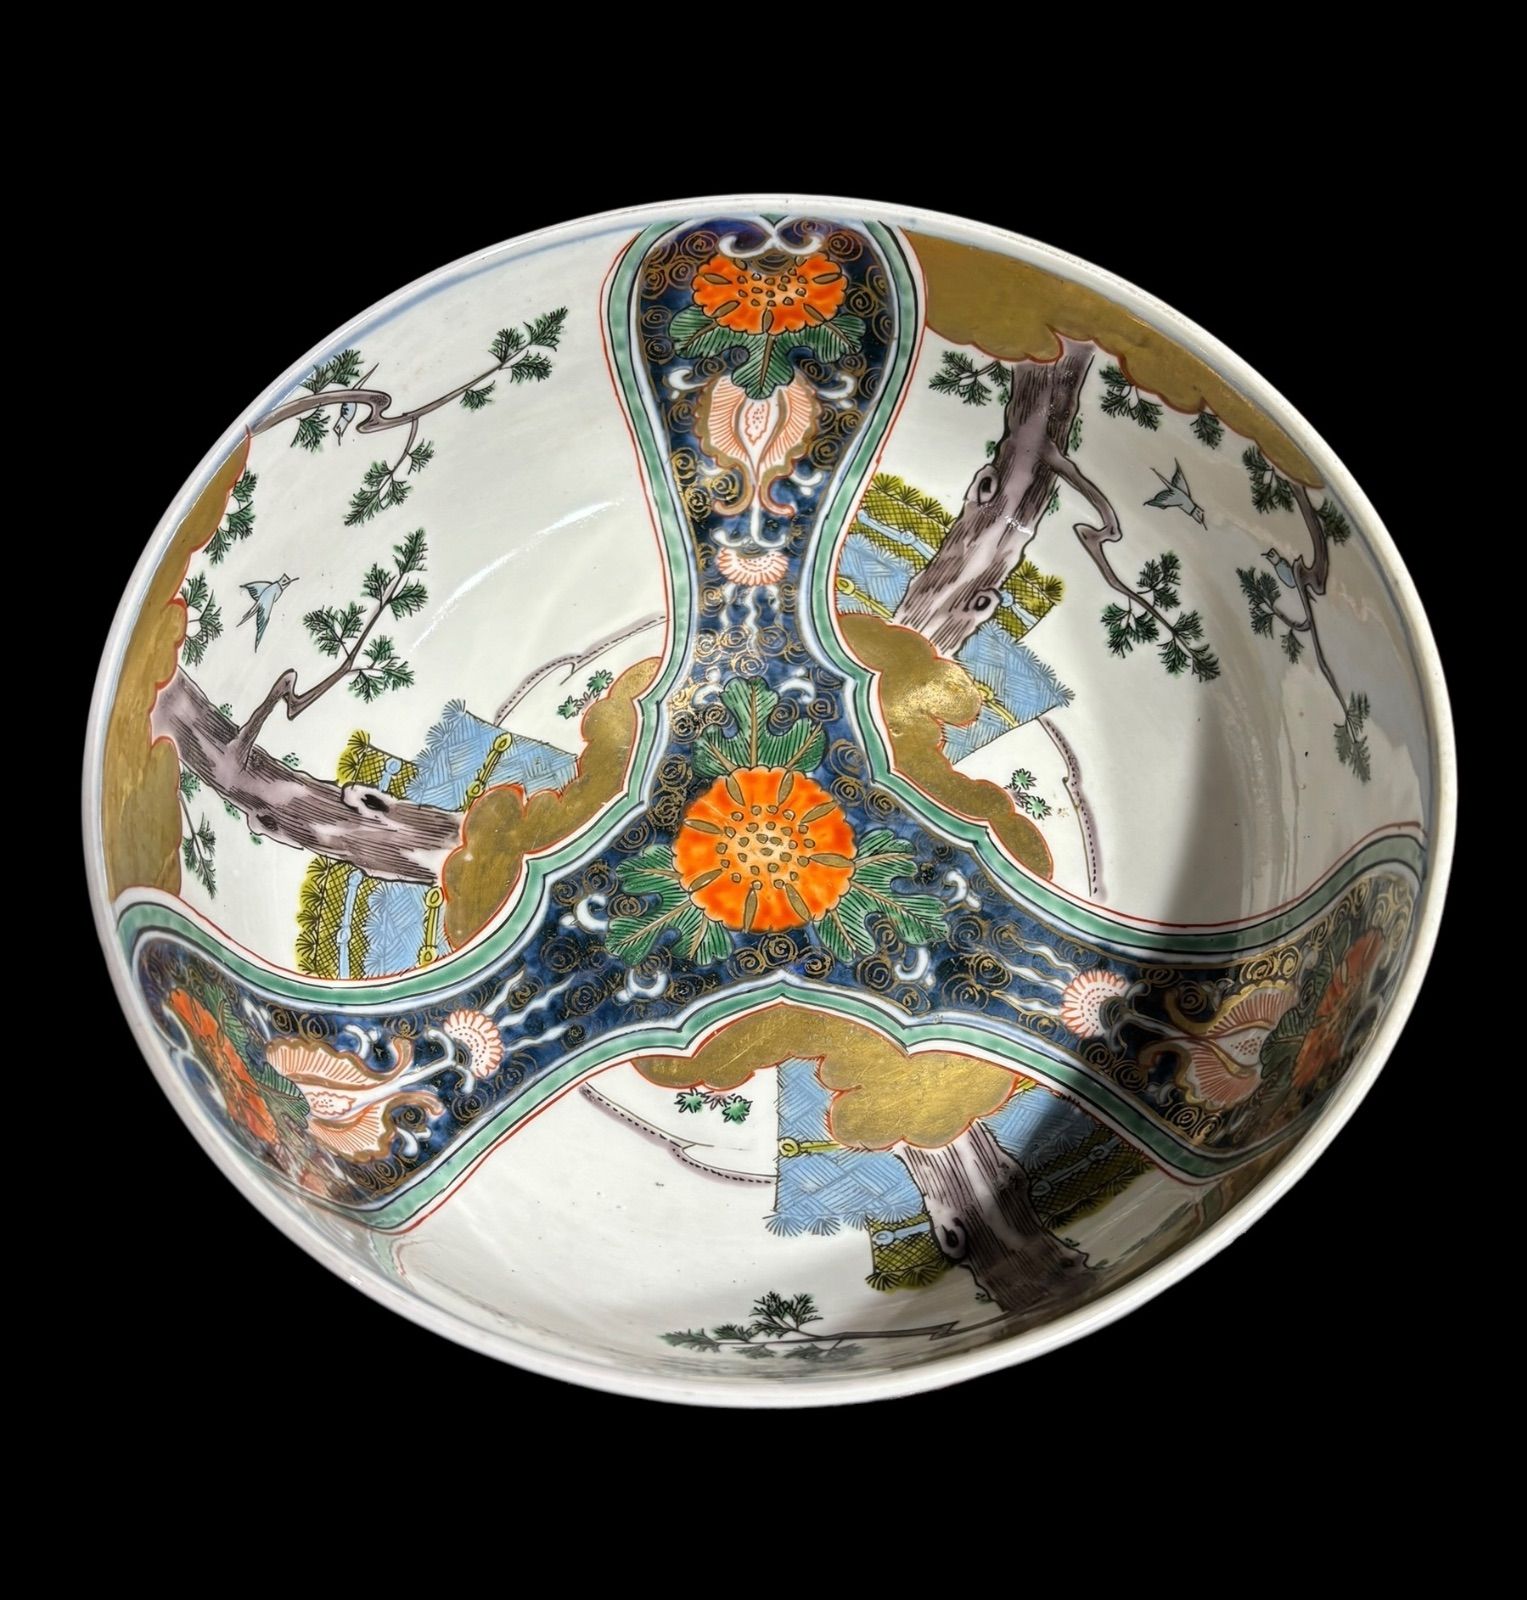 伊万里 中鉢 [松 風景 紋柄] 色絵 盛り皿 飾り皿 鉢 大鉢 深鉢 器 古伊万里 江戸時代 和食器 骨董品